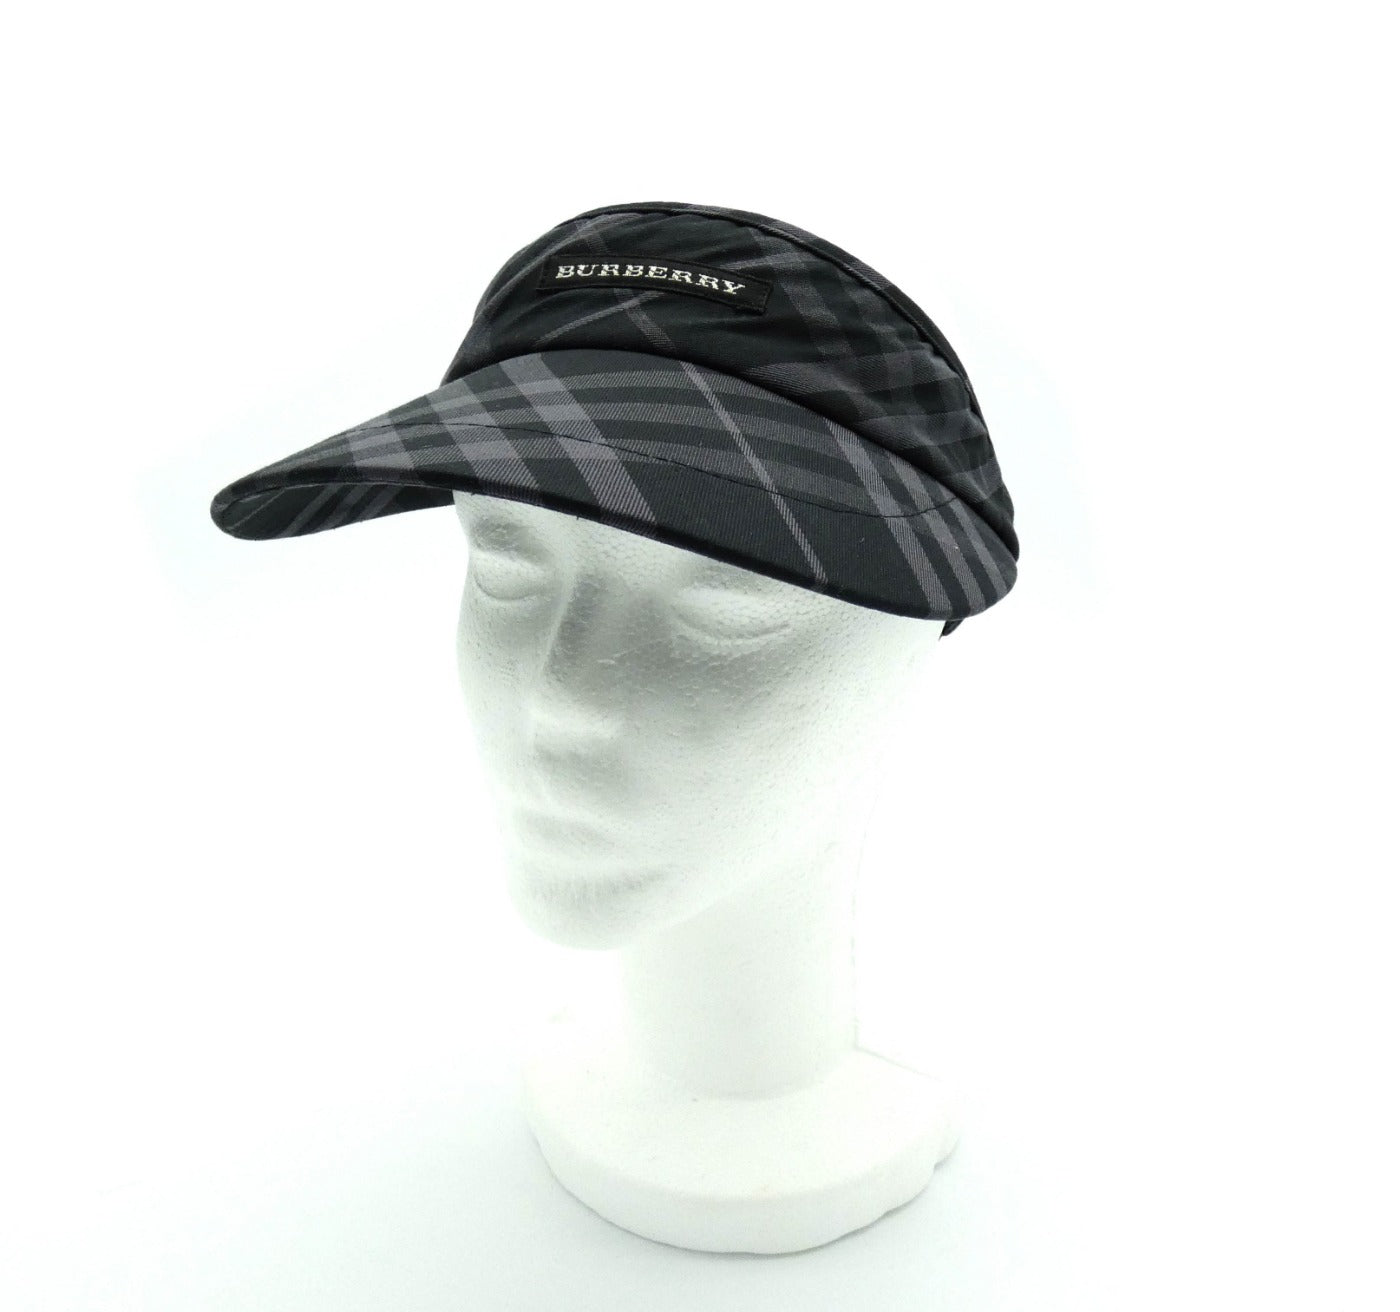 Burberry Black and Grey Nova Check Golf Visor Hats Burberry